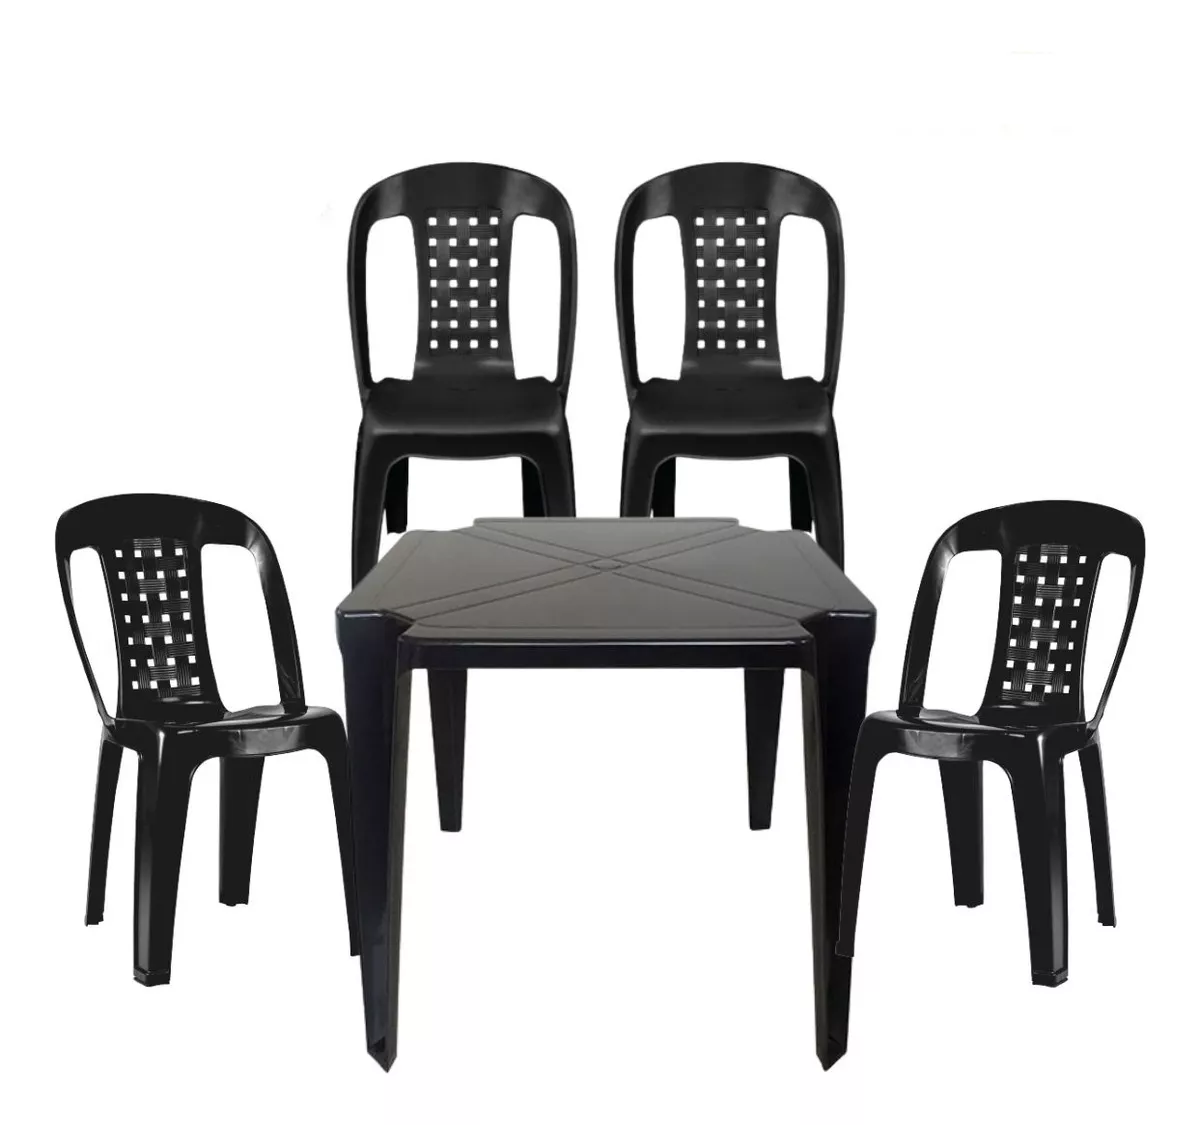 Segunda imagem para pesquisa de conjunto de mesa com 4 cadeiras plastico